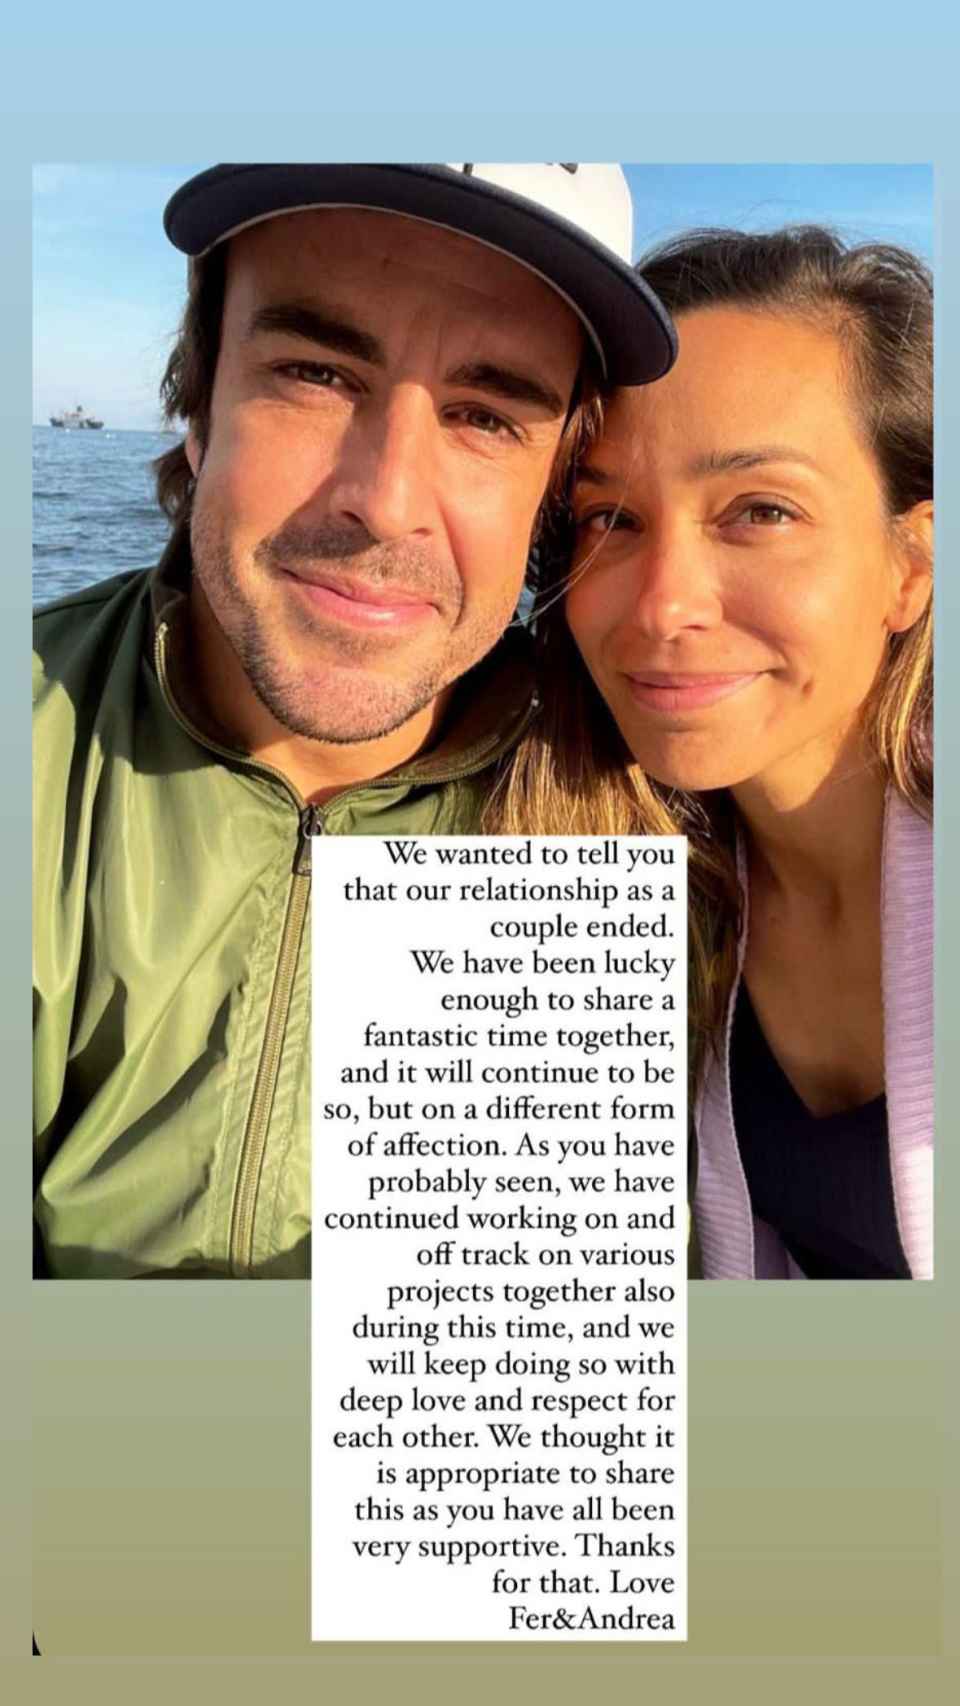 Publicación compartida por Fernando Alonso y Andrea Schlager para anunciar su ruptura.